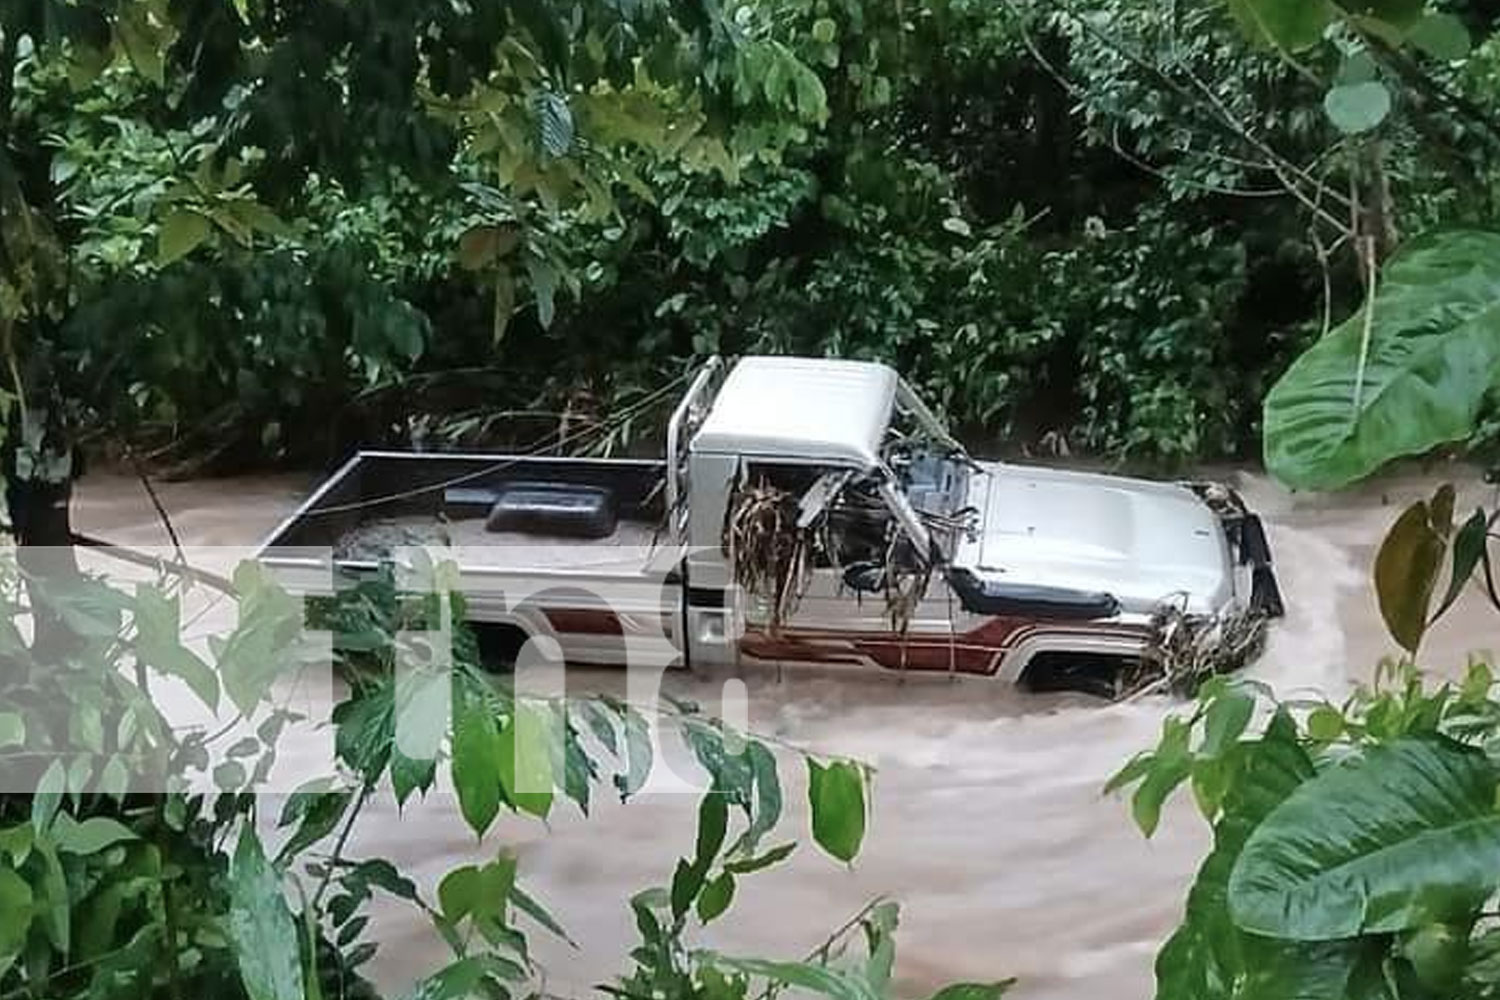 Foto: Camioneta arrastrada por fuertes corrientes deja un desaparecido en Jinotega/TN8